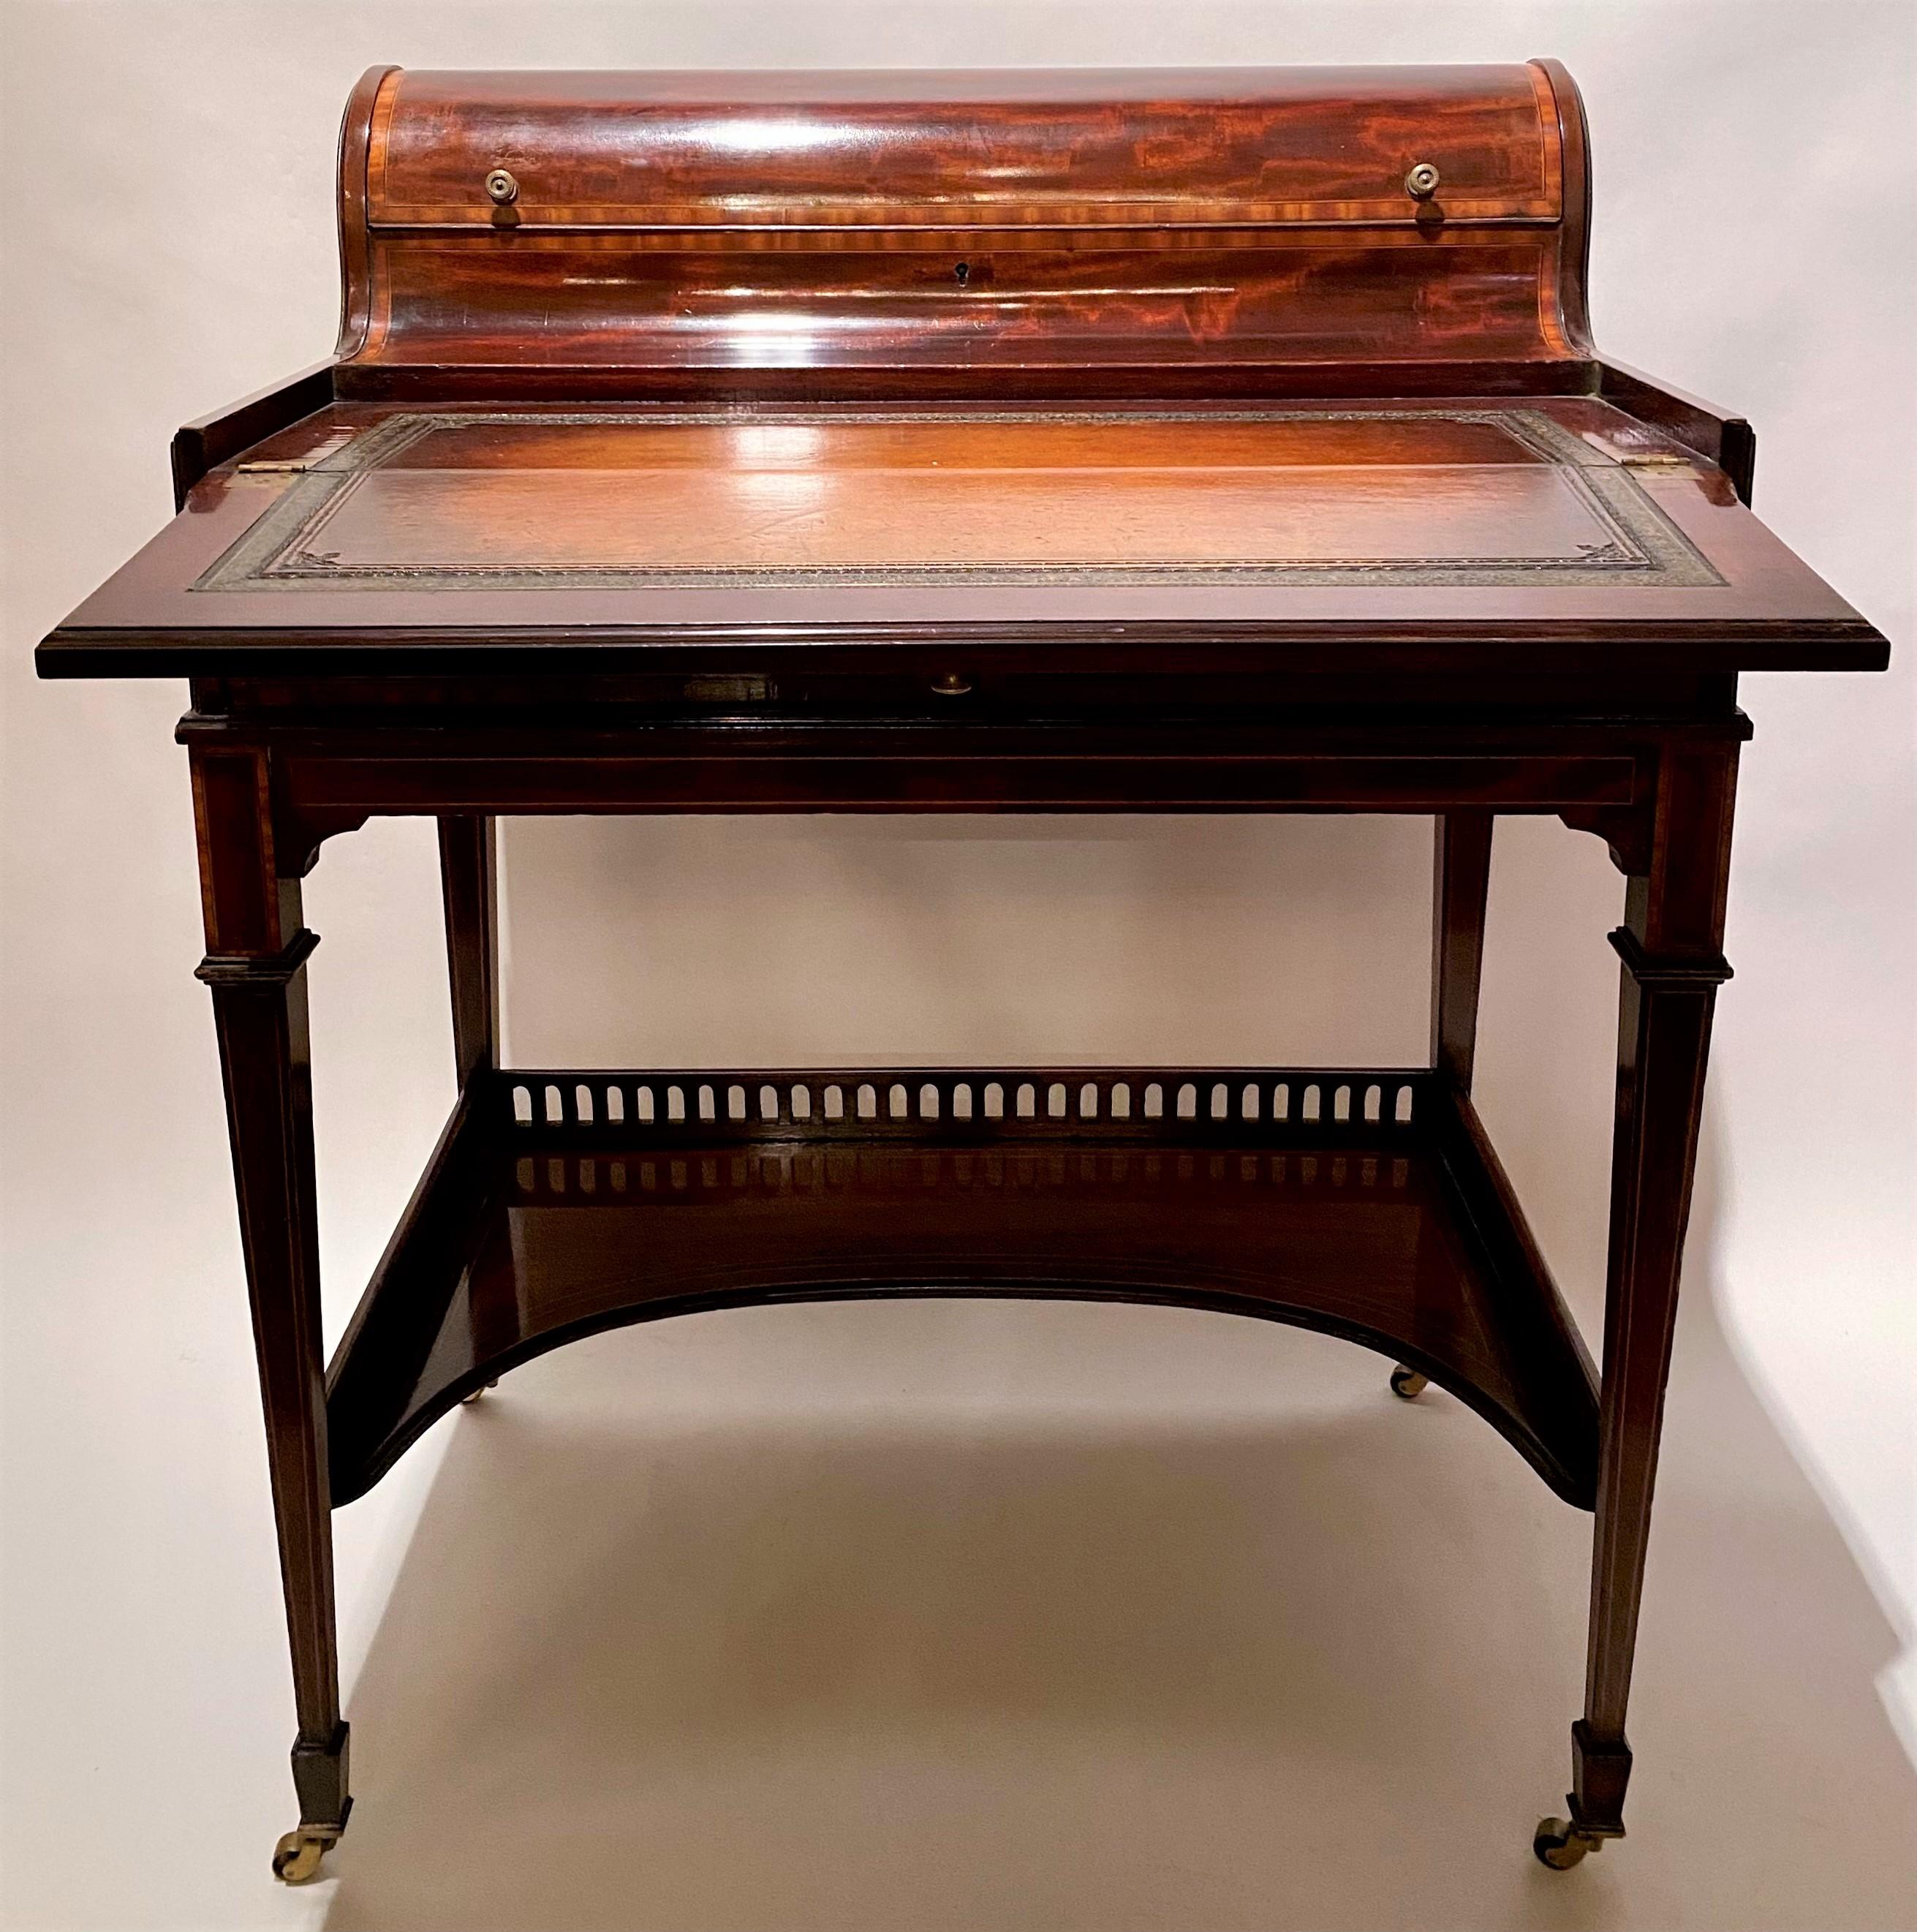 Antiker englischer Mahagoni-Schreibtisch auf Rollen, außergewöhnliche Qualität und Design, CIRCA 1875-1895.